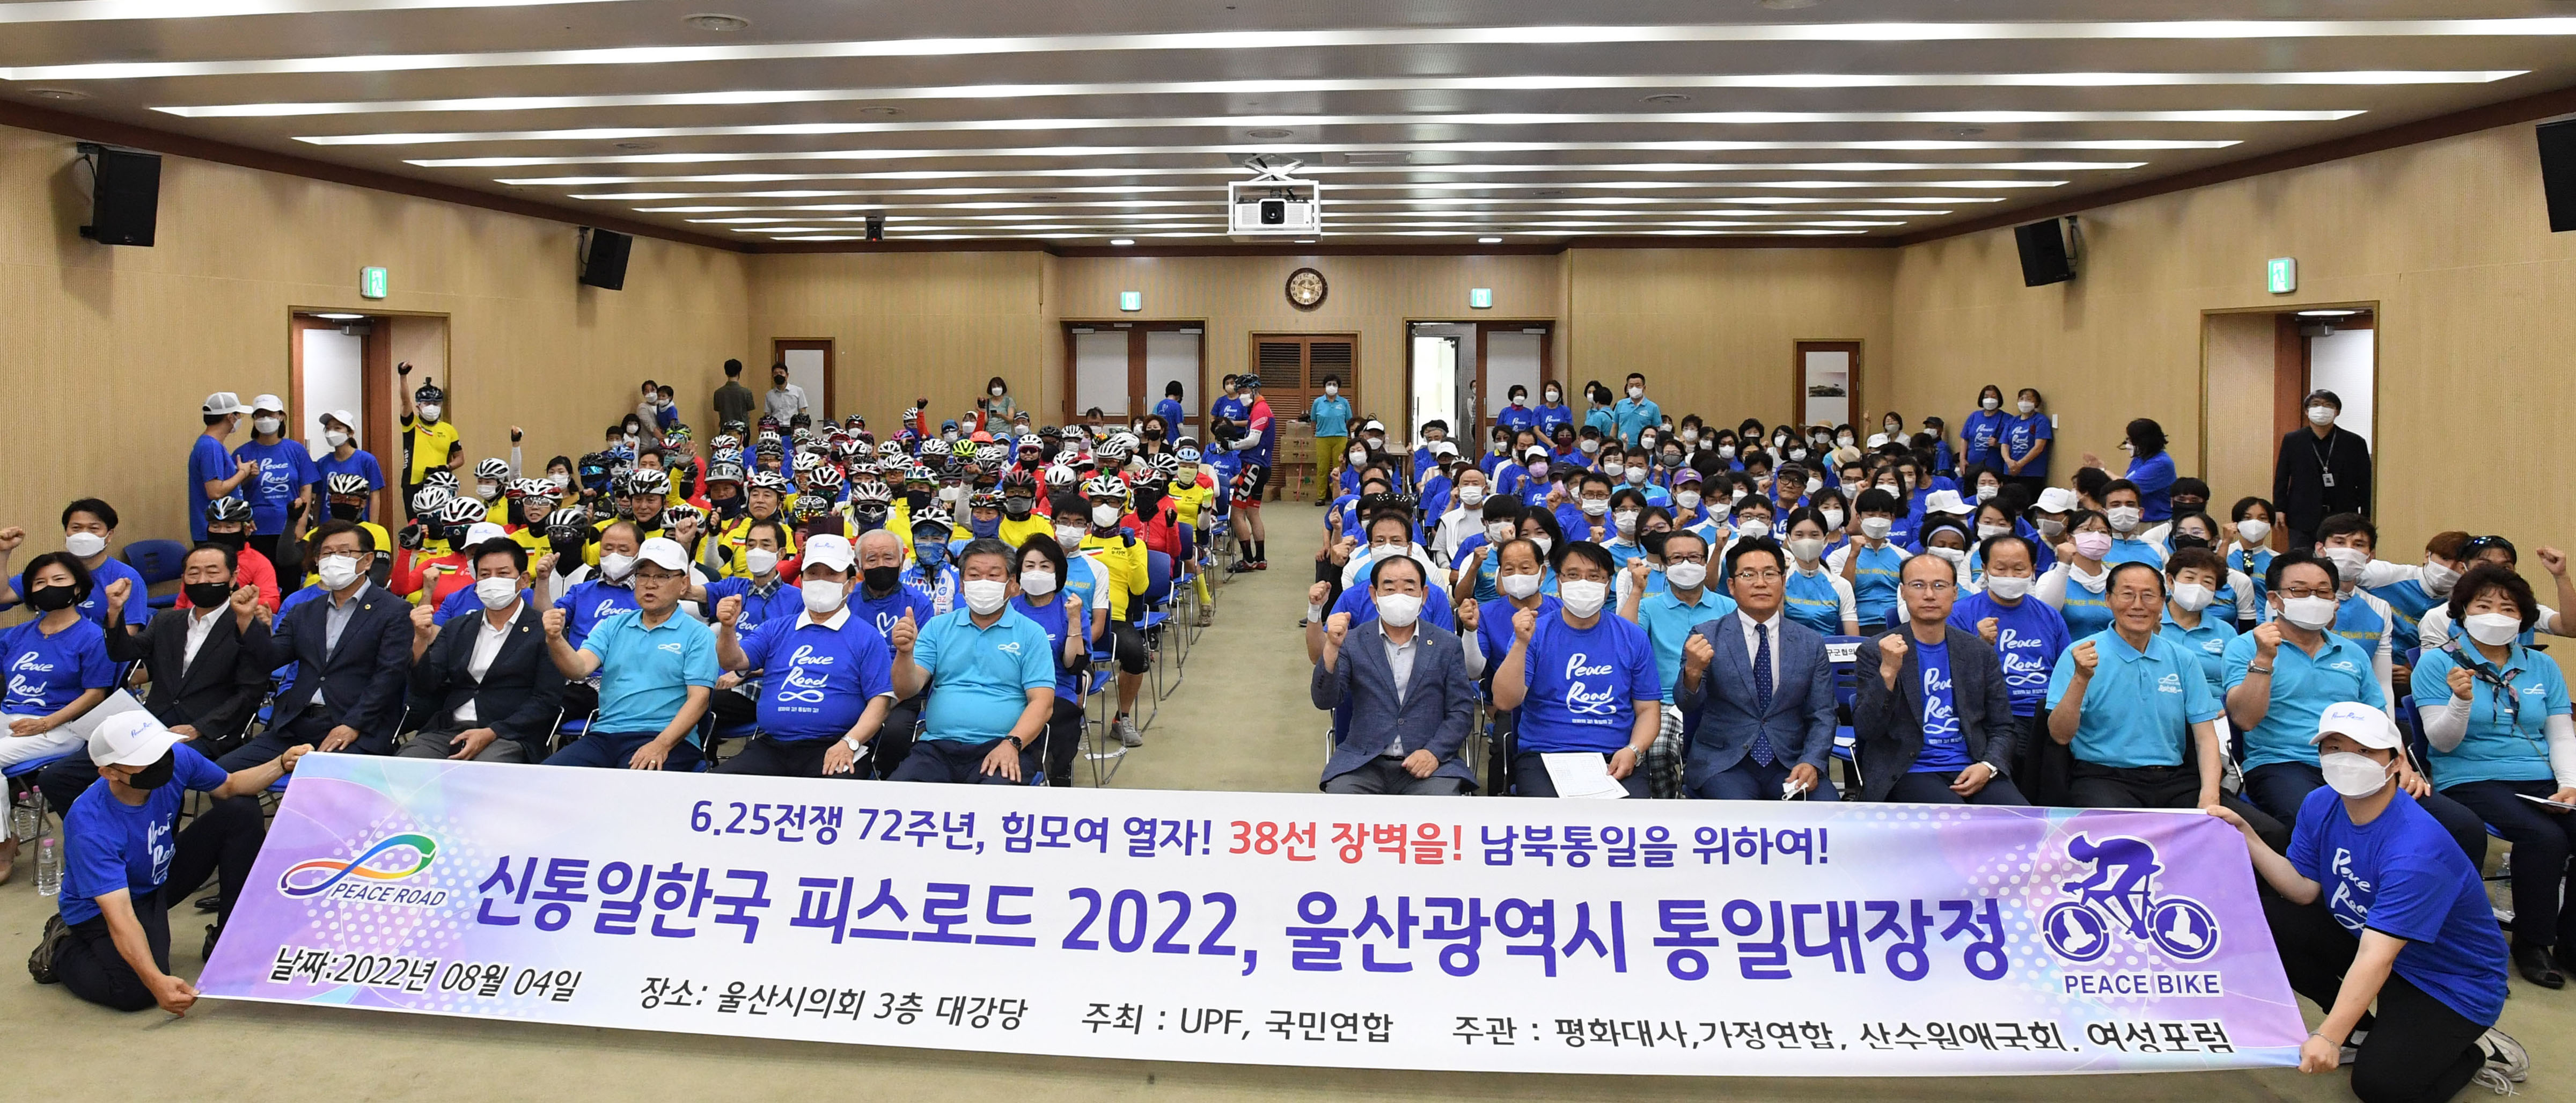 One Korea 피스로드 2022 통일대장정4